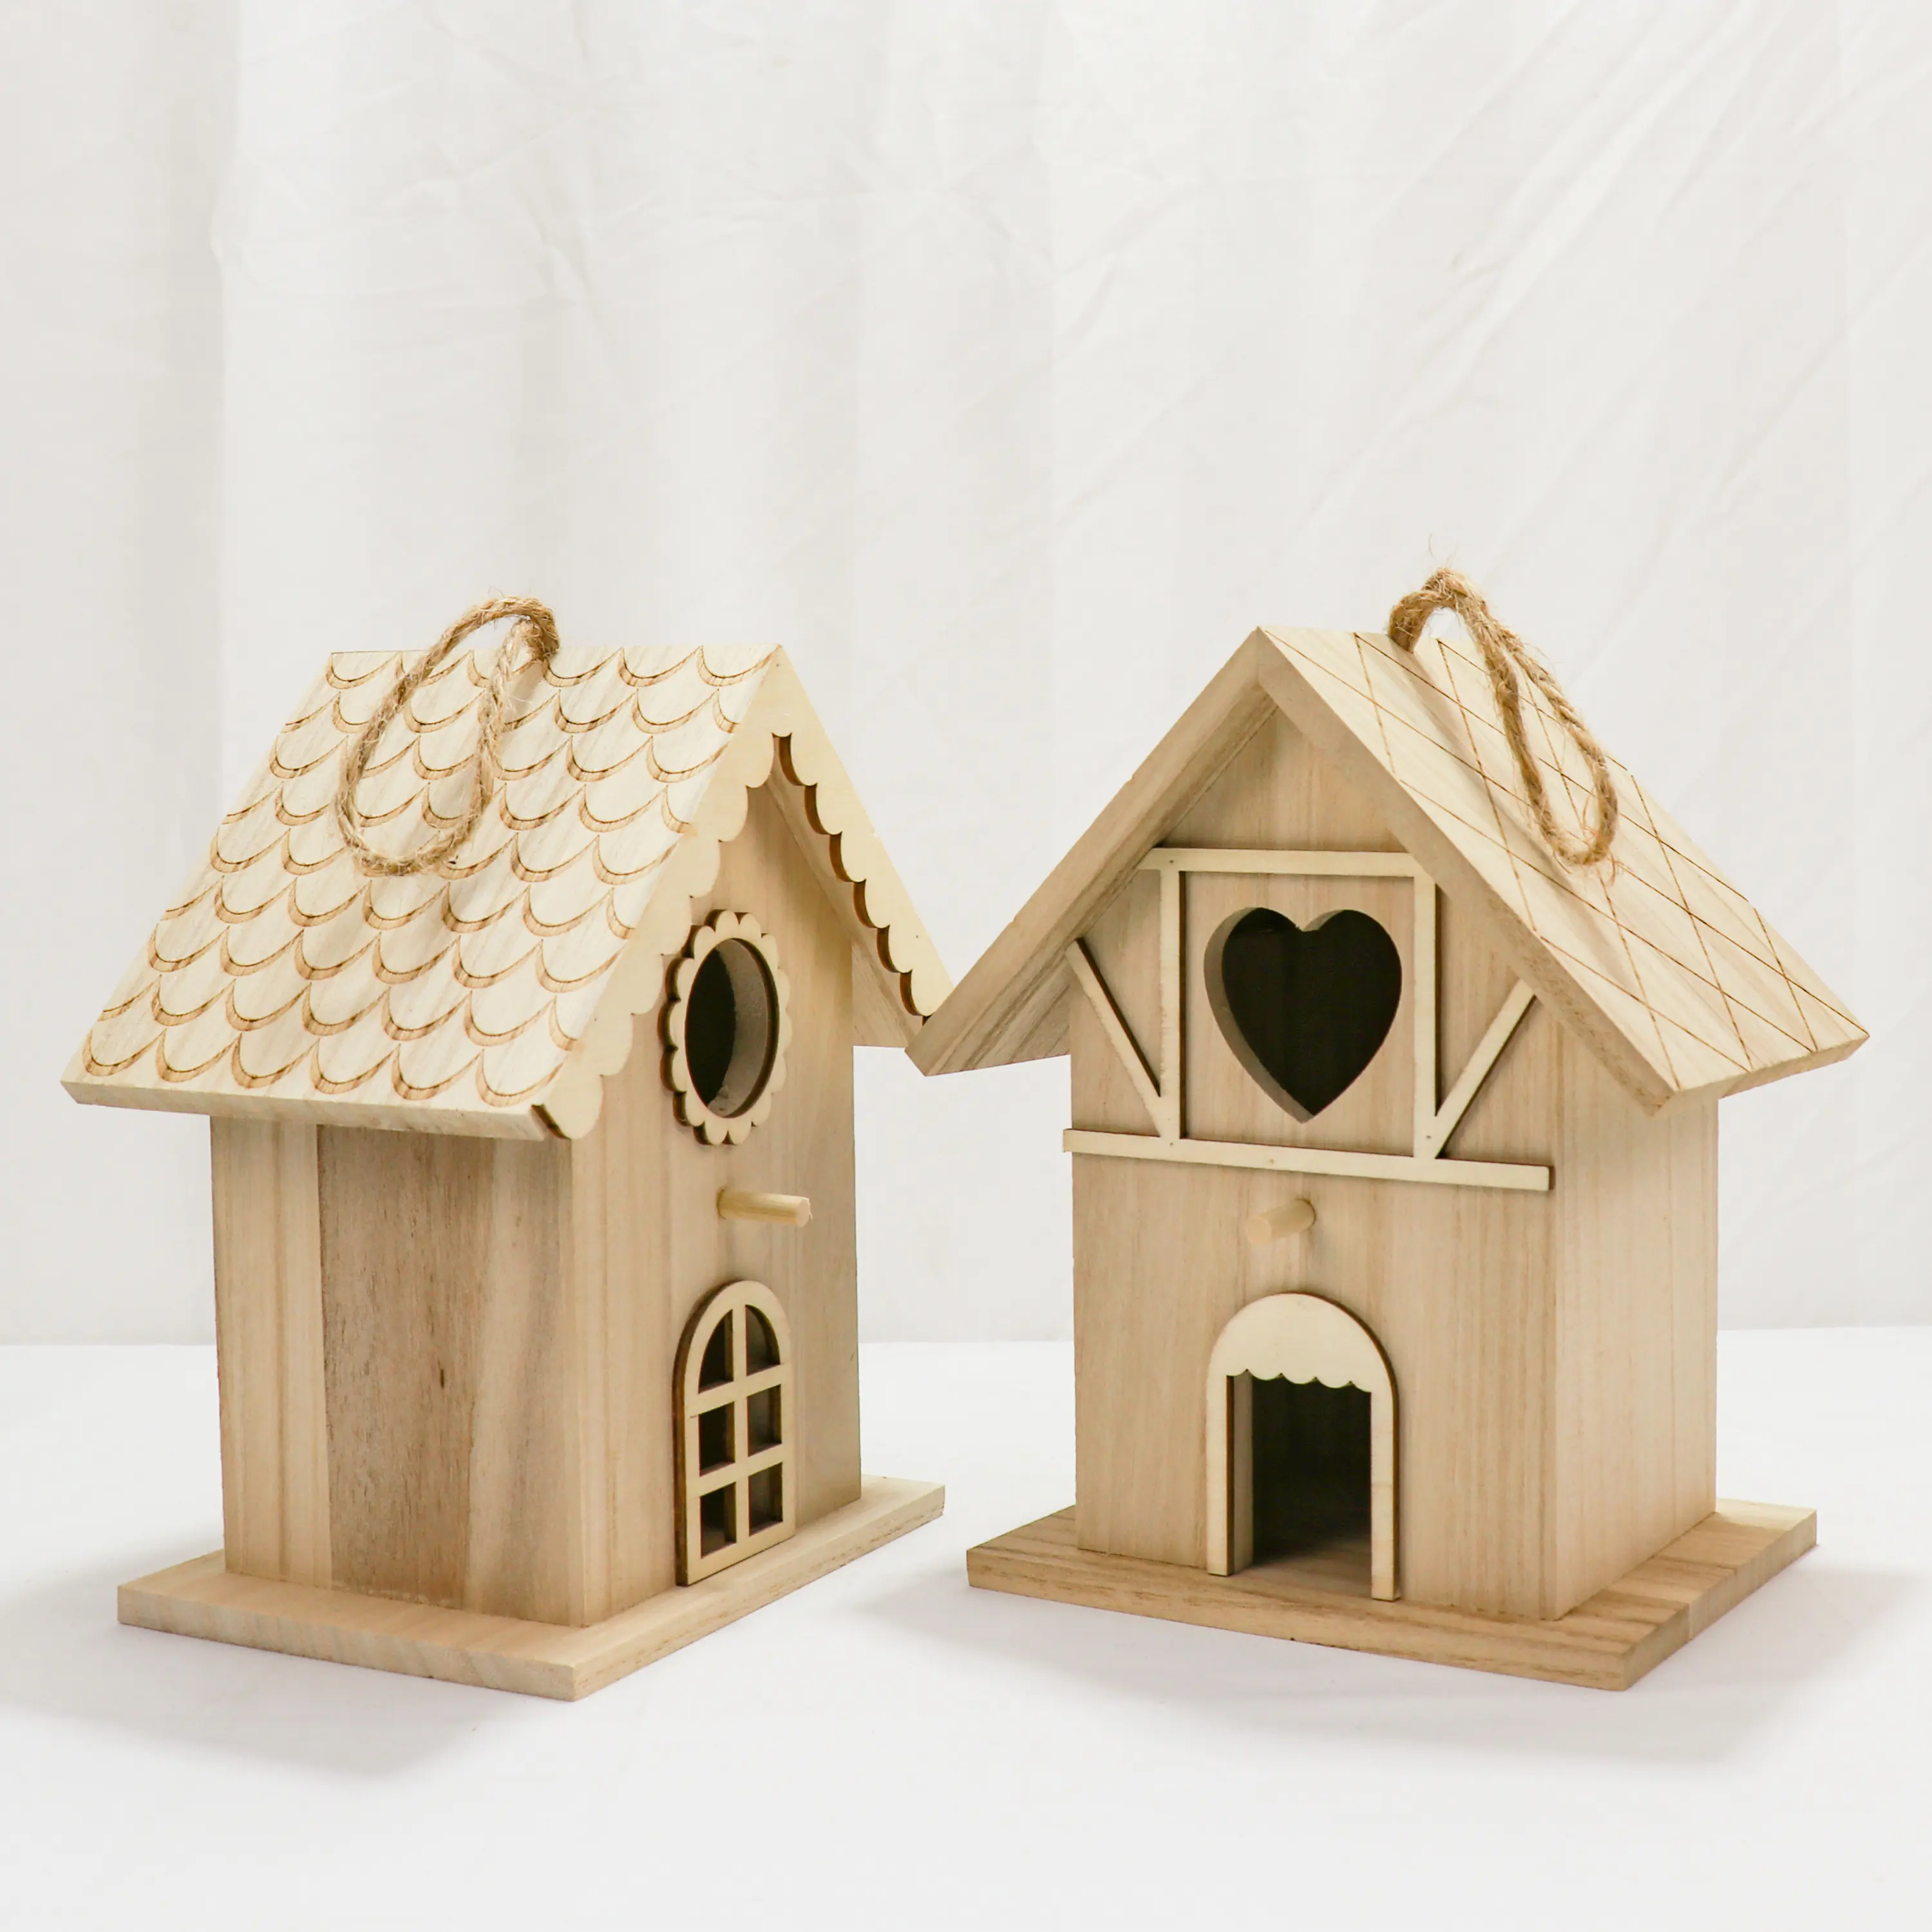 Mini Holz Vogelhaus Kits Vogel häuser zum Malen und Dekorieren für Kinder Kunst handwerk oder Garten projekte